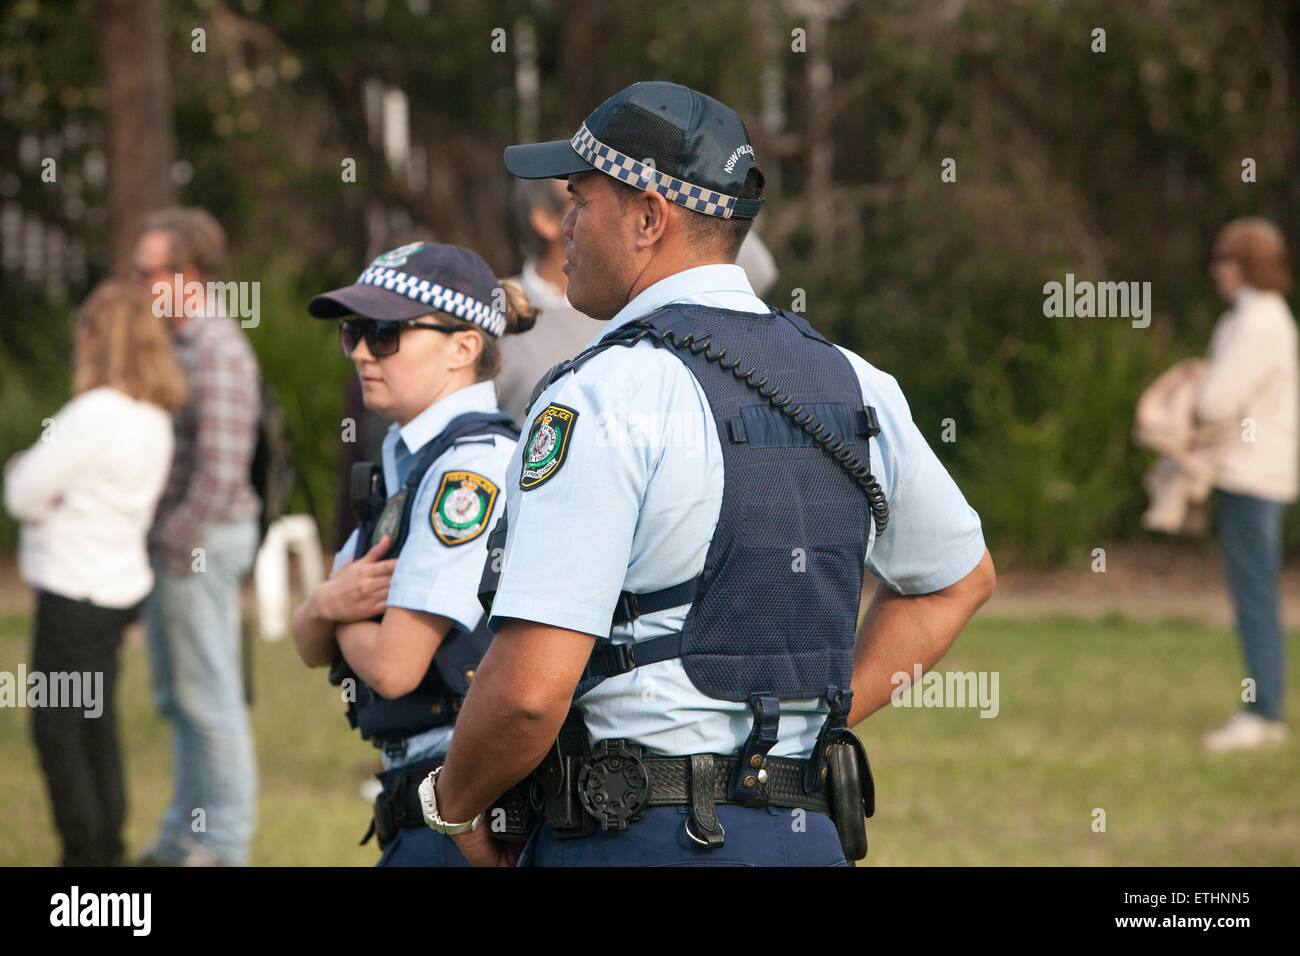 Les agents de police de Nouvelle-Galles du Sud hommes femmes en patrouille à l'Avalon Beach Le tattoo militaire sur les plages du nord de Sydney, NSW, Australie Banque D'Images